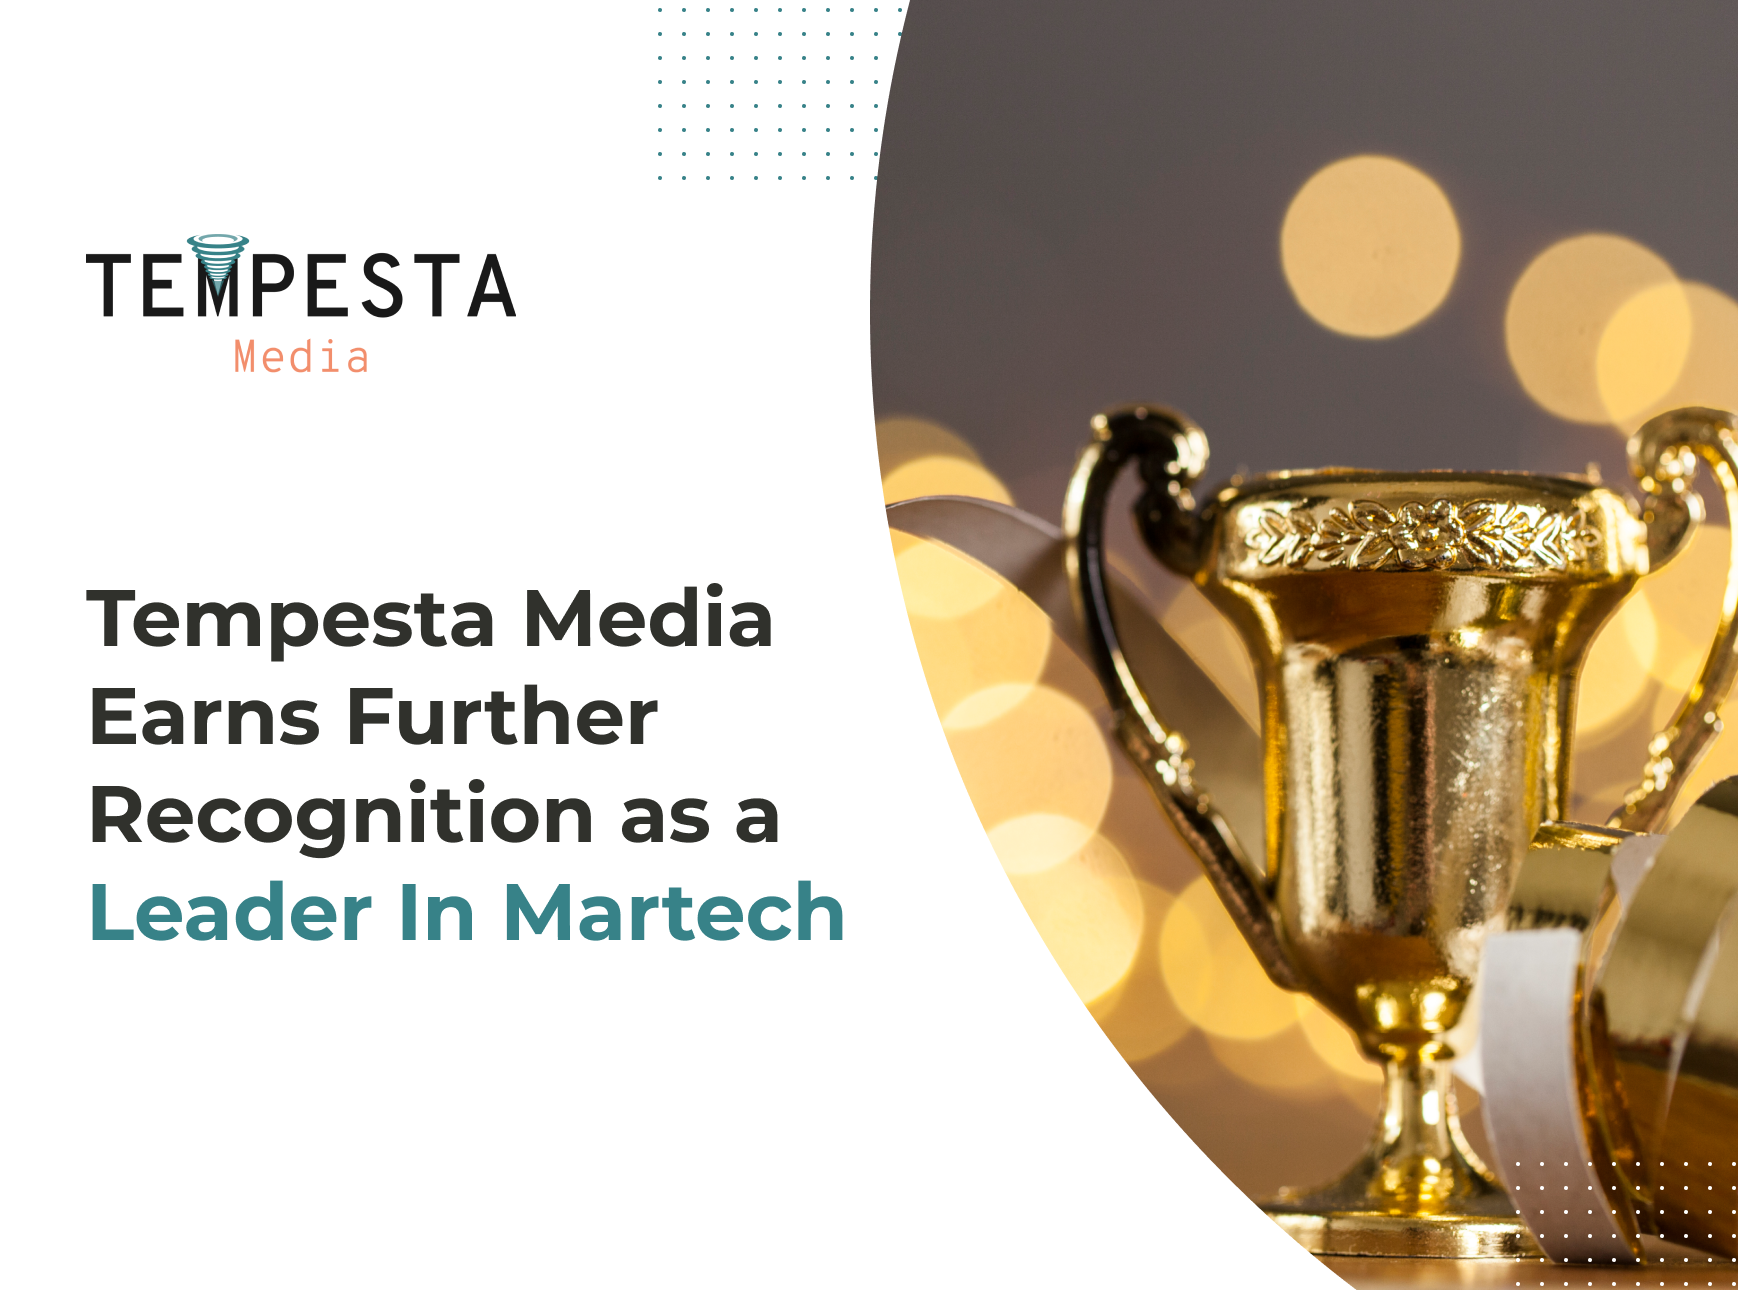 Award from CMA for Tempesta Media